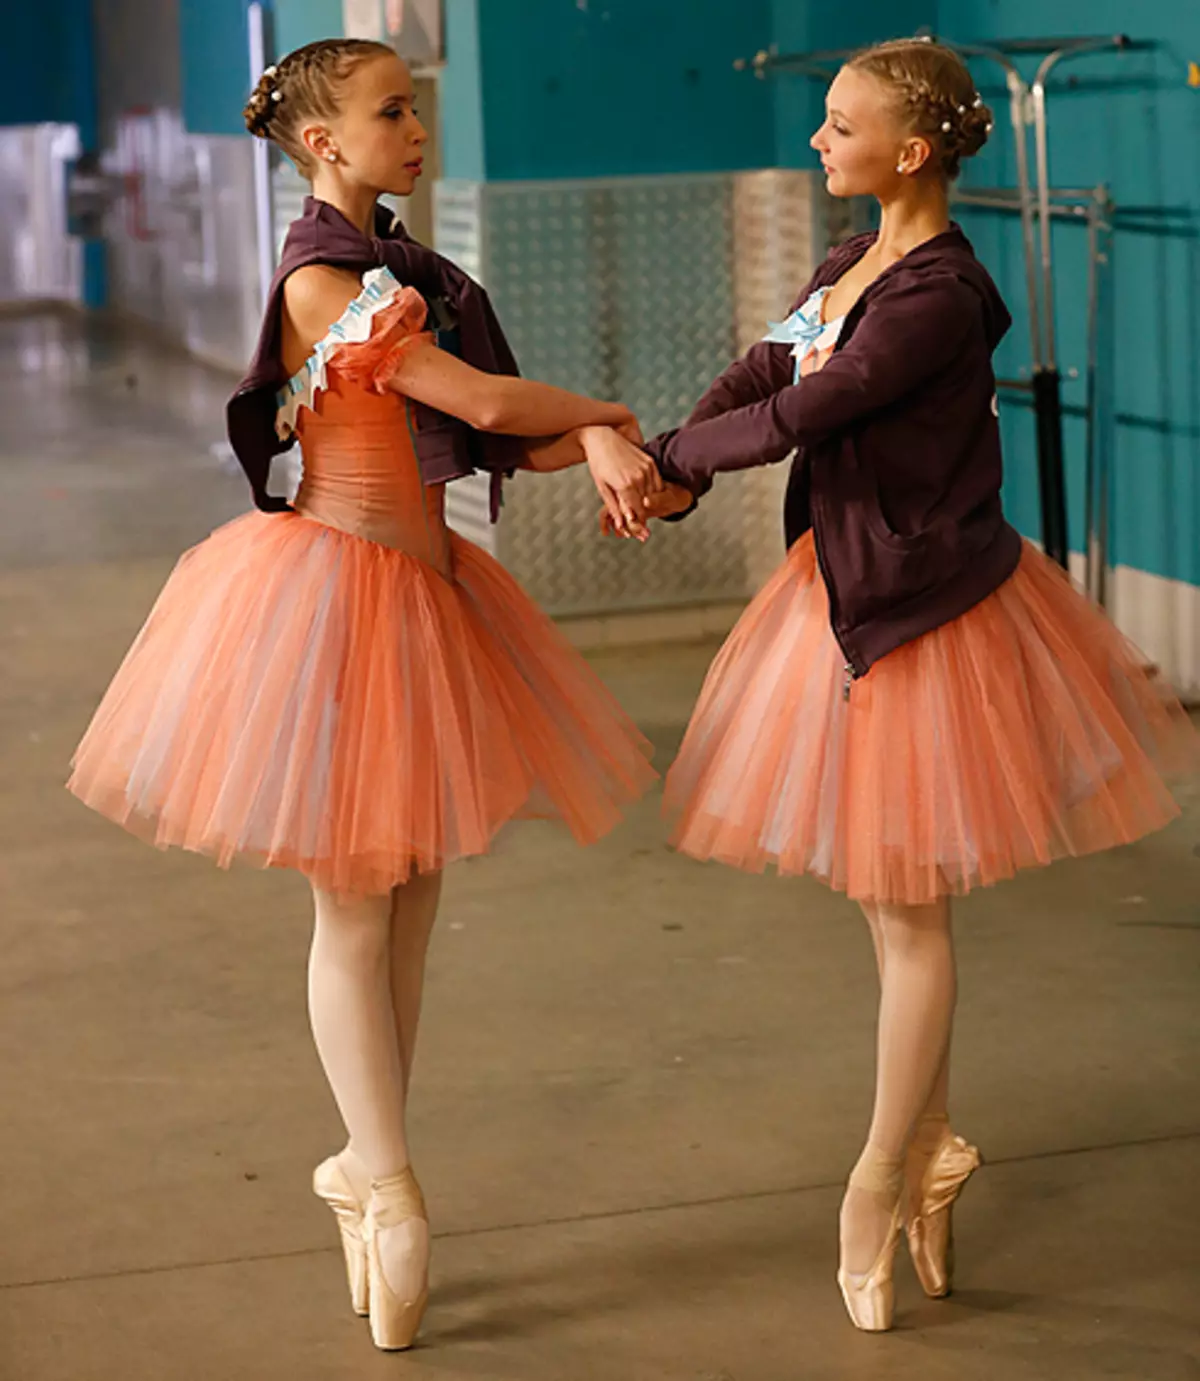 Daria Ustyuzhanin og Ksenia Andreenko - Nemendur í Academy of Russian Ballet Nafndagur eftir Vaganova